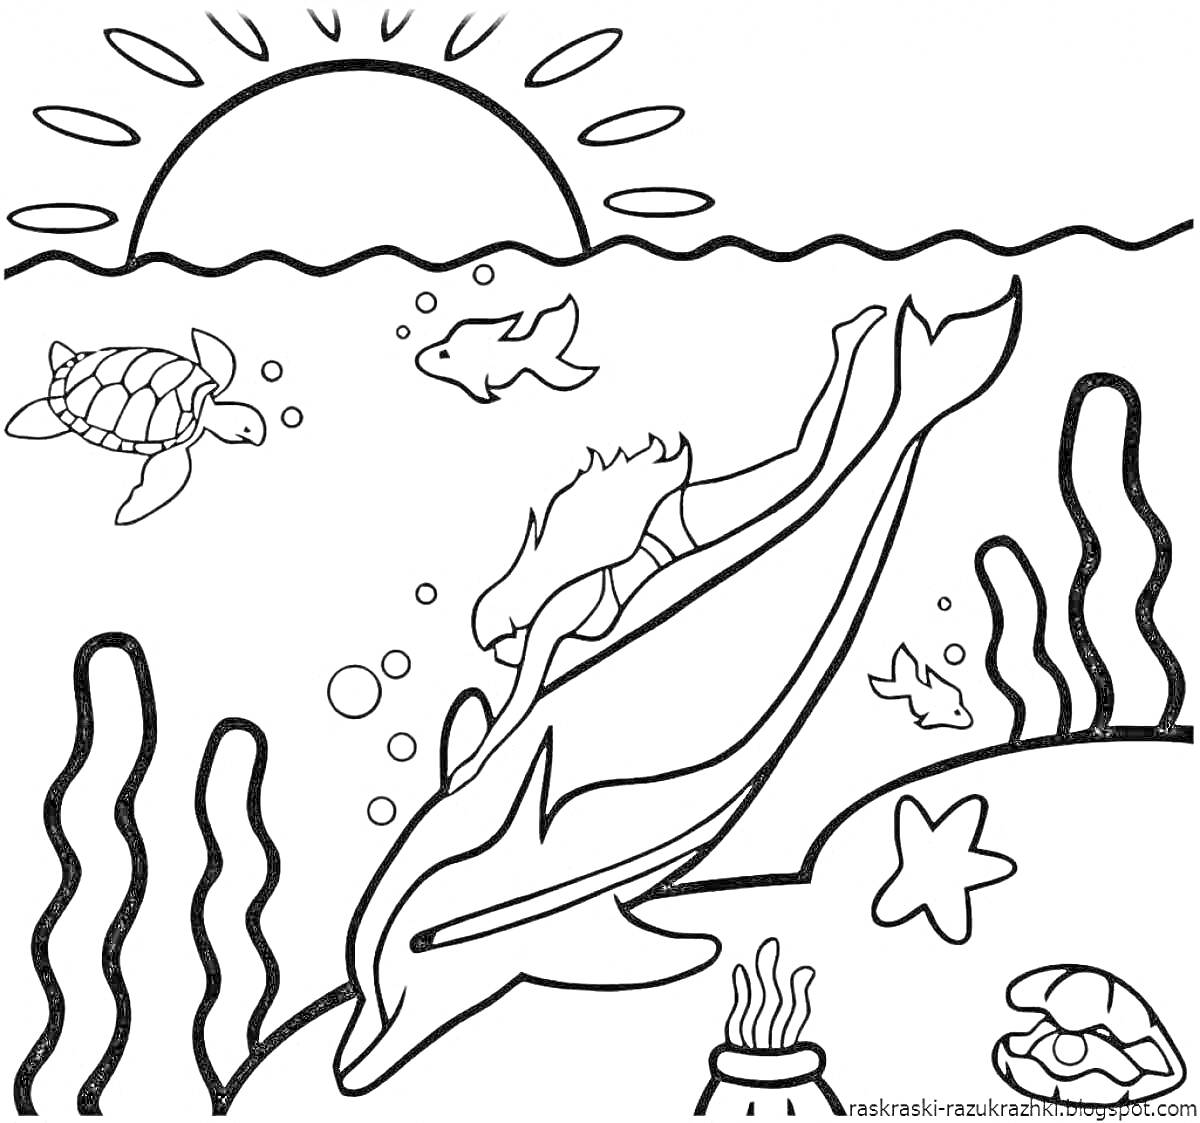 Раскраска Подводный мир с дельфином, черепахами, рыбами и морскими звездами